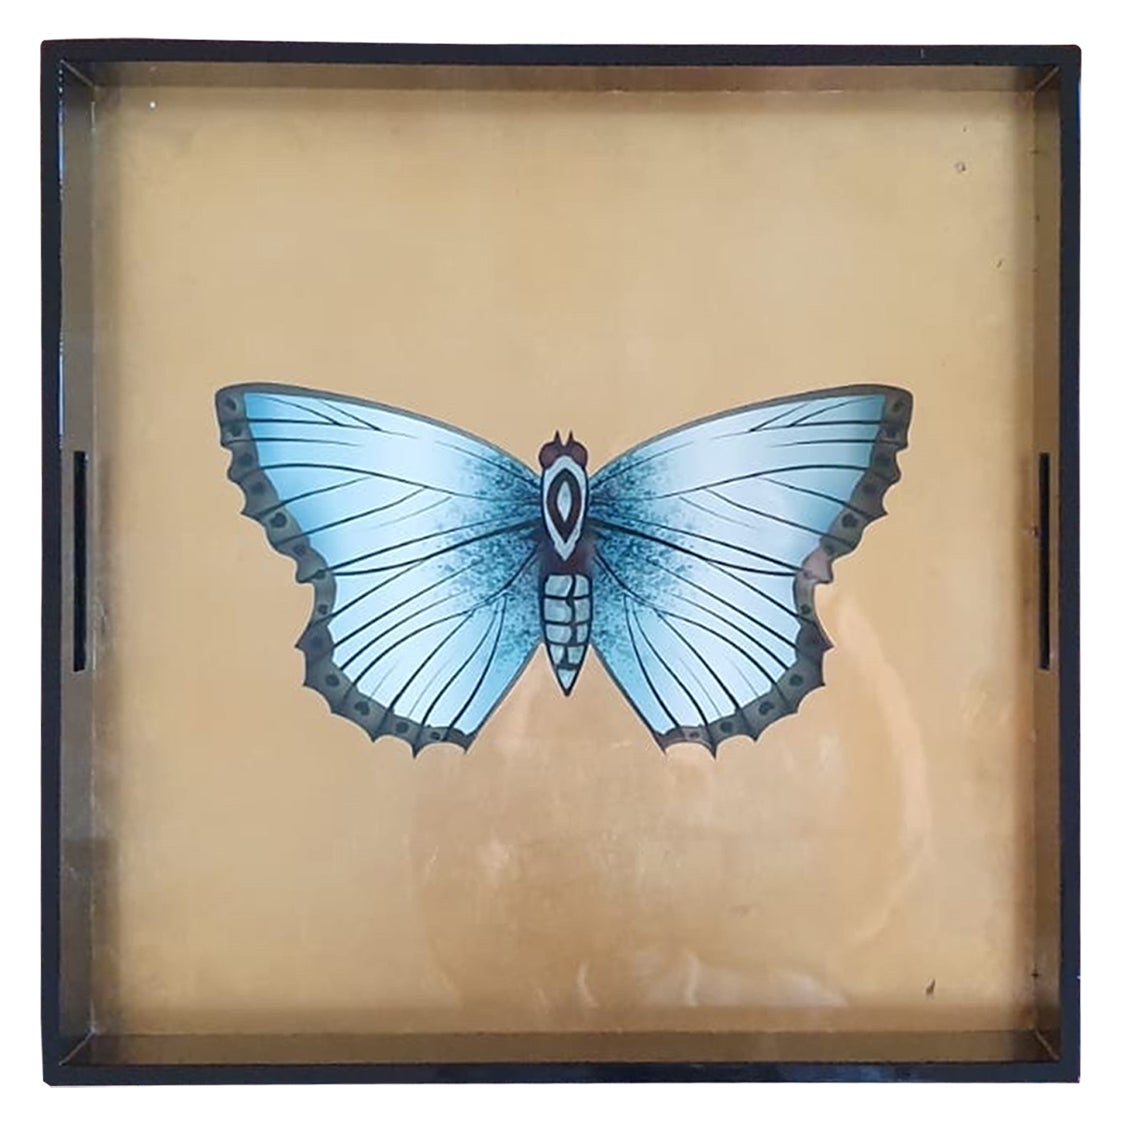 Il s'agit d'une pièce unique et spéciale
Ce plateau laqué Butterfly Golden est l'objet idéal pour illuminer votre espace 
Eleg avec une ambiance des années 40 mais en même temps très contemporaine.
 